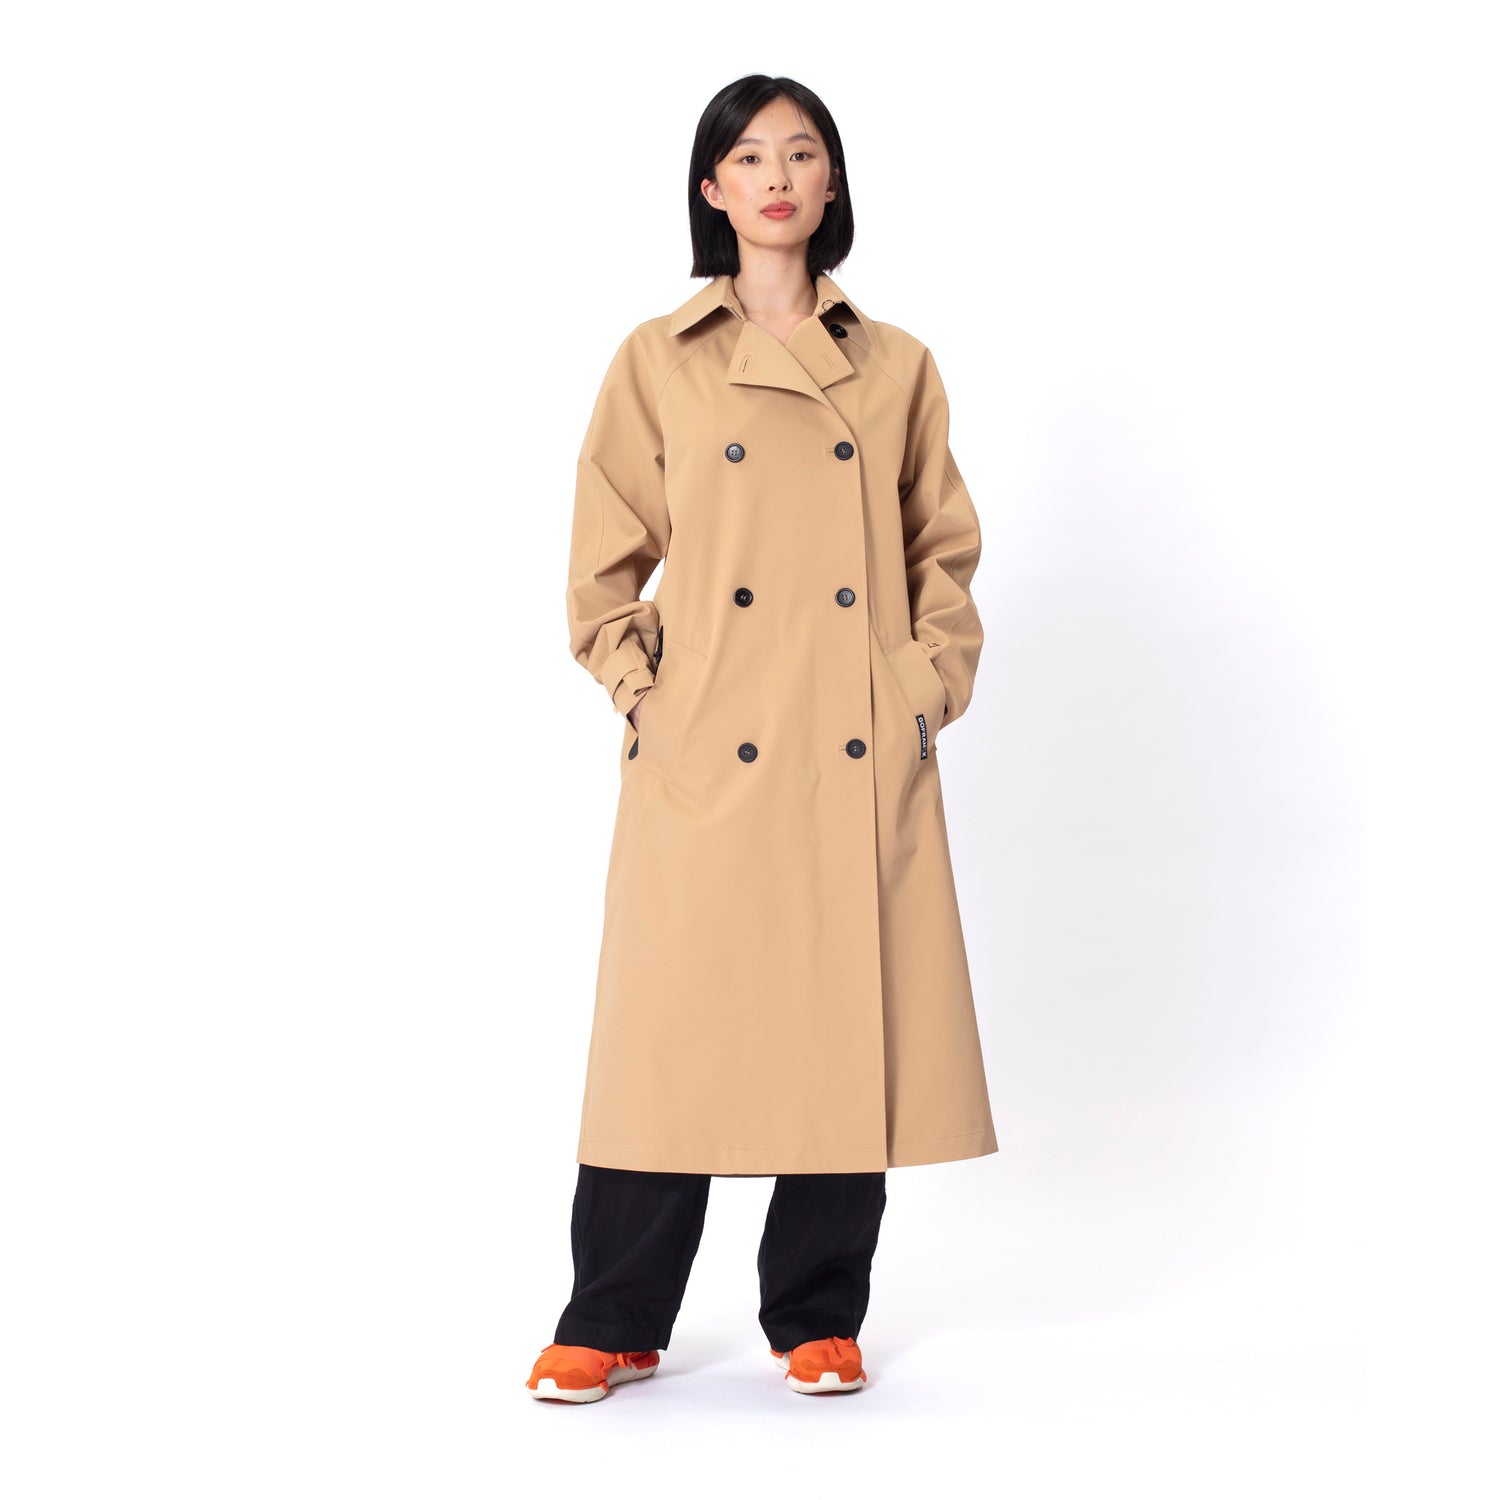 GOFRANCK-SLUSH-Product-Image-women-rainjacket